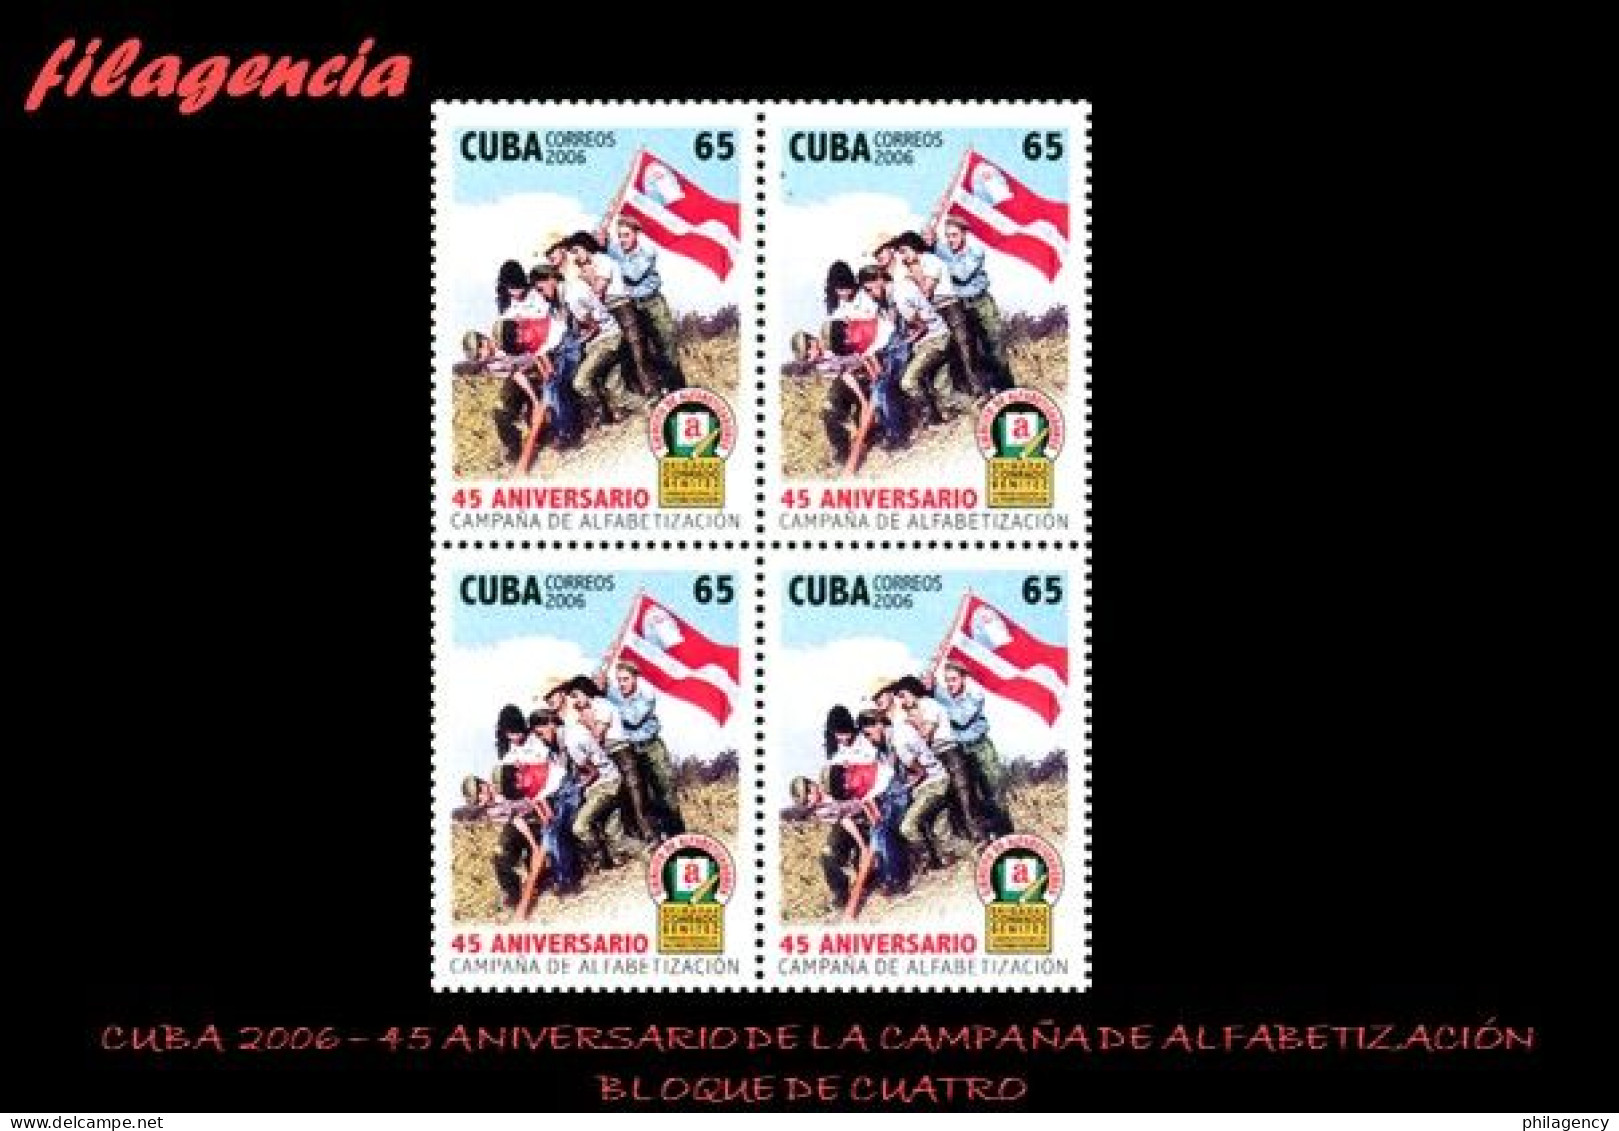 CUBA. BLOQUES DE CUATRO. 2006-37 45 ANIVERSARIO DE LA CAMPAÑA DE ALFABETIZACIÓN - Ongebruikt